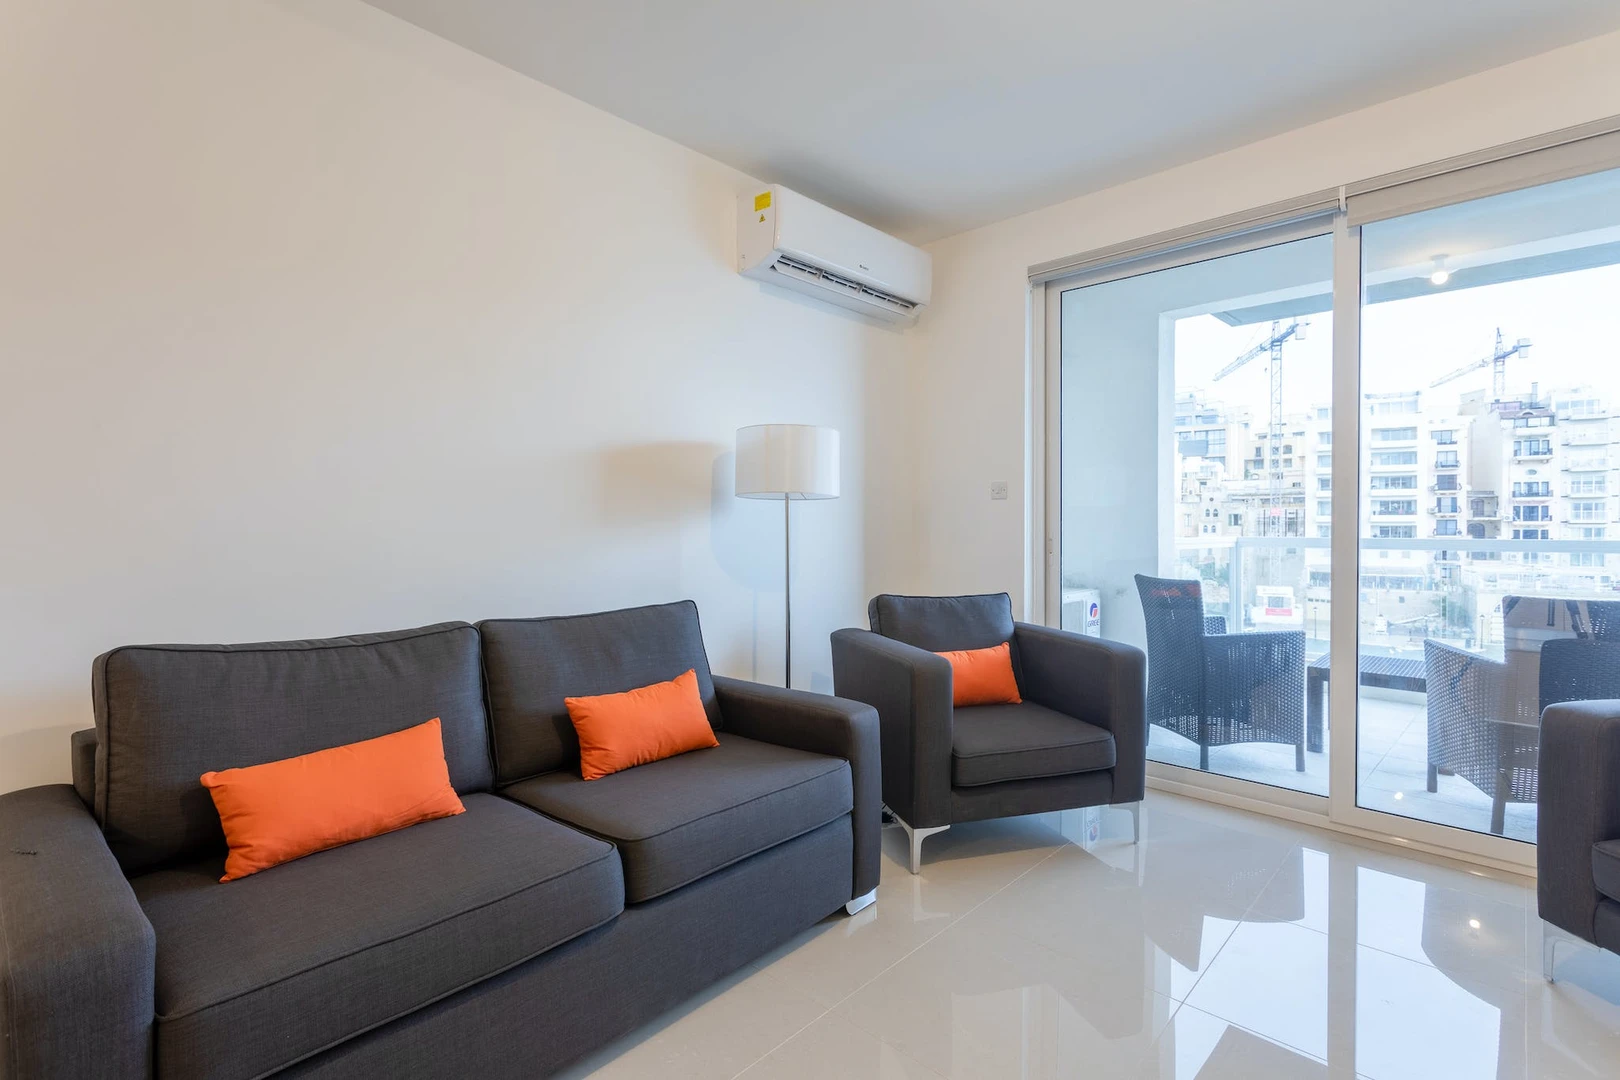 Apartamento totalmente mobilado em Malta